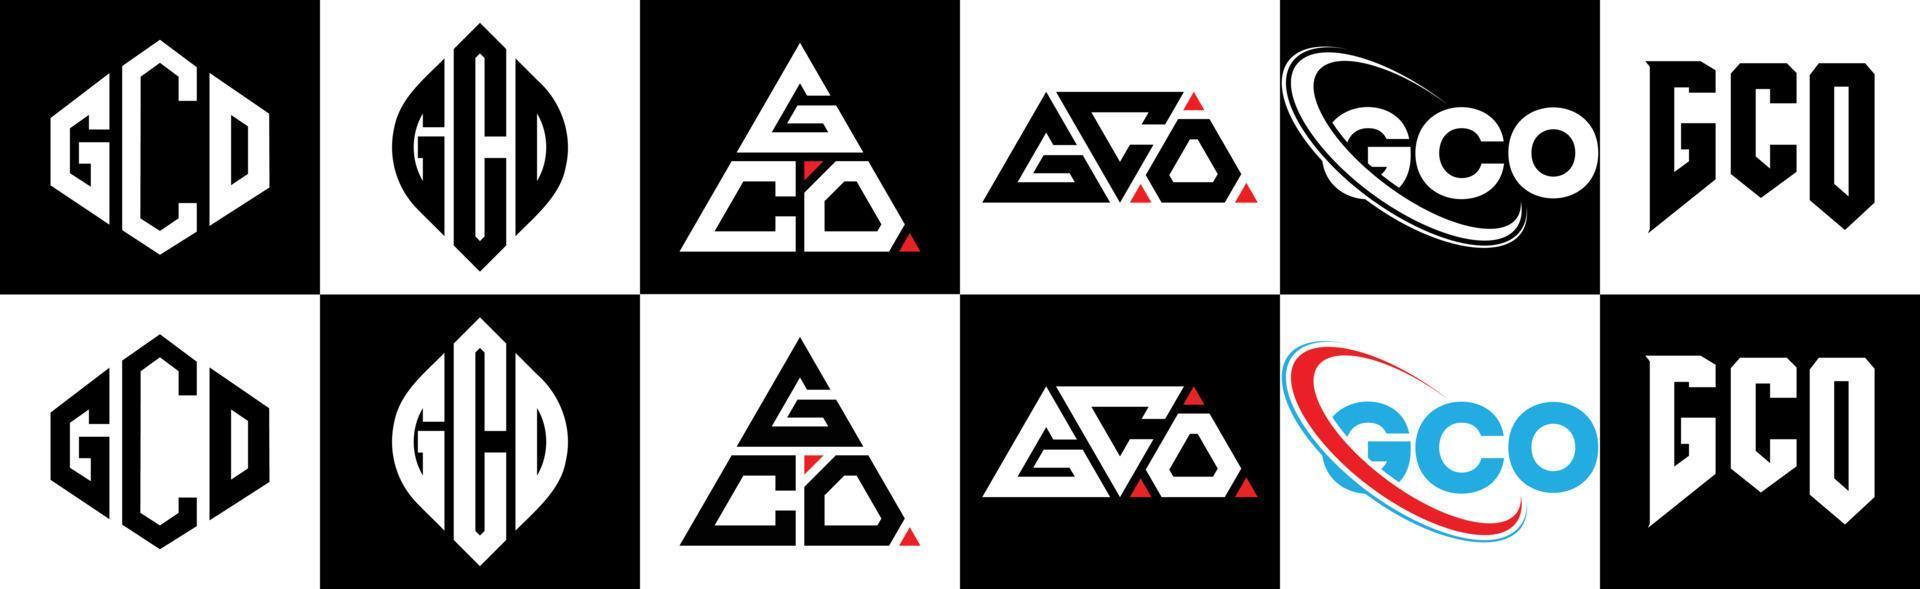 création de logo de lettre gco en six styles. gco polygone, cercle, triangle, hexagone, style plat et simple avec logo de lettre de variation de couleur noir et blanc dans un plan de travail. logo gco minimaliste et classique vecteur